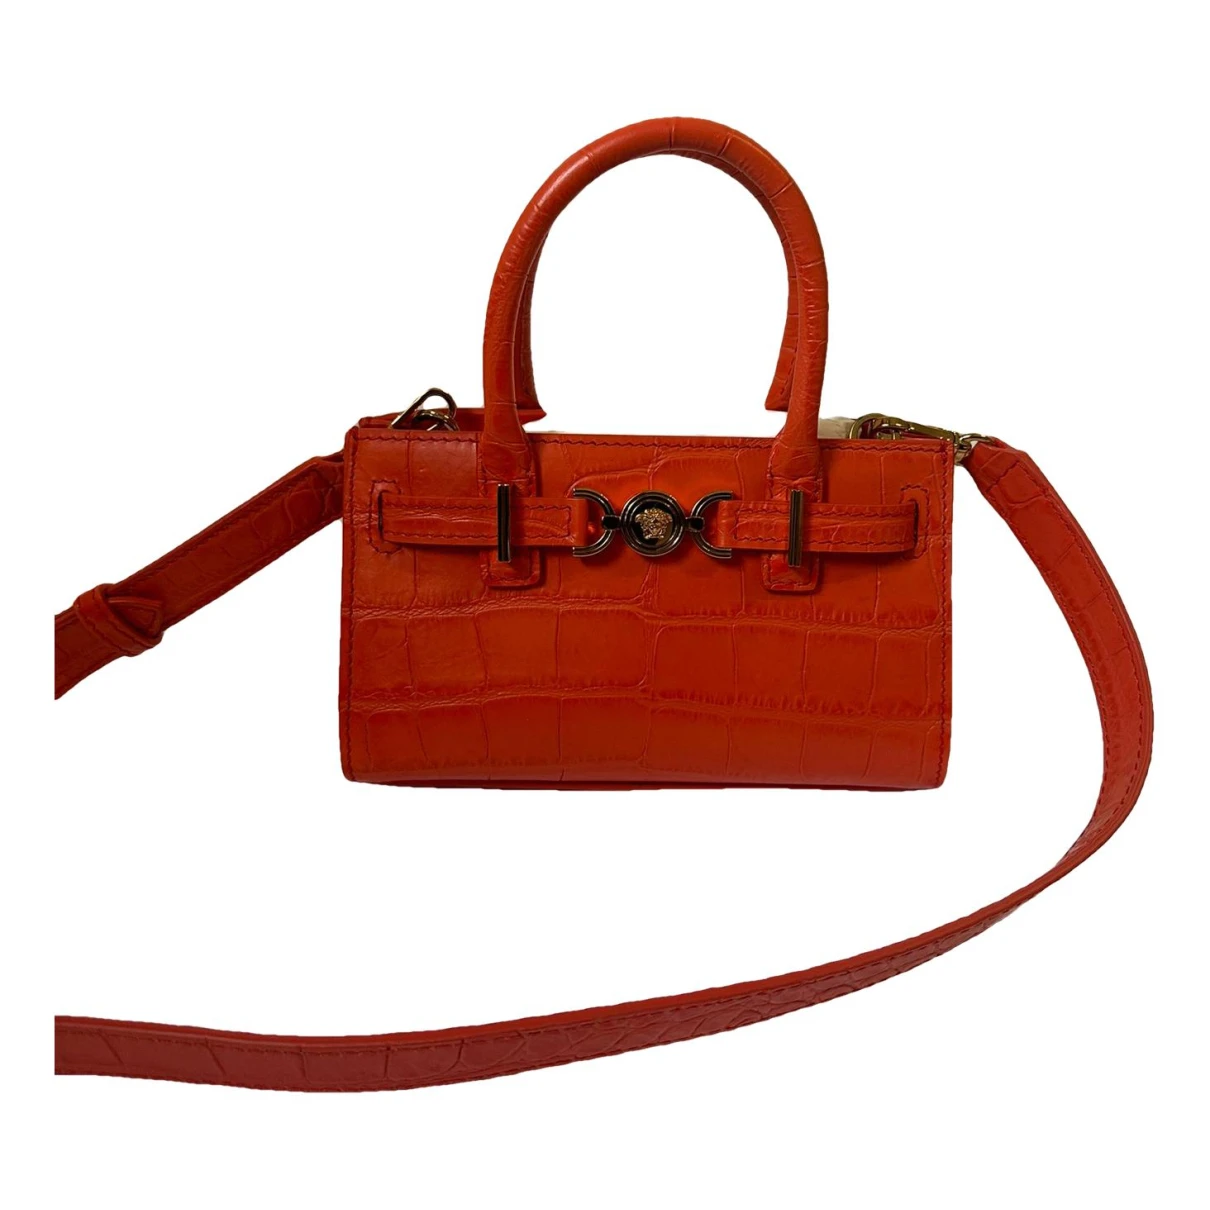 Pre-owned Versace Leather Handbag In Orange